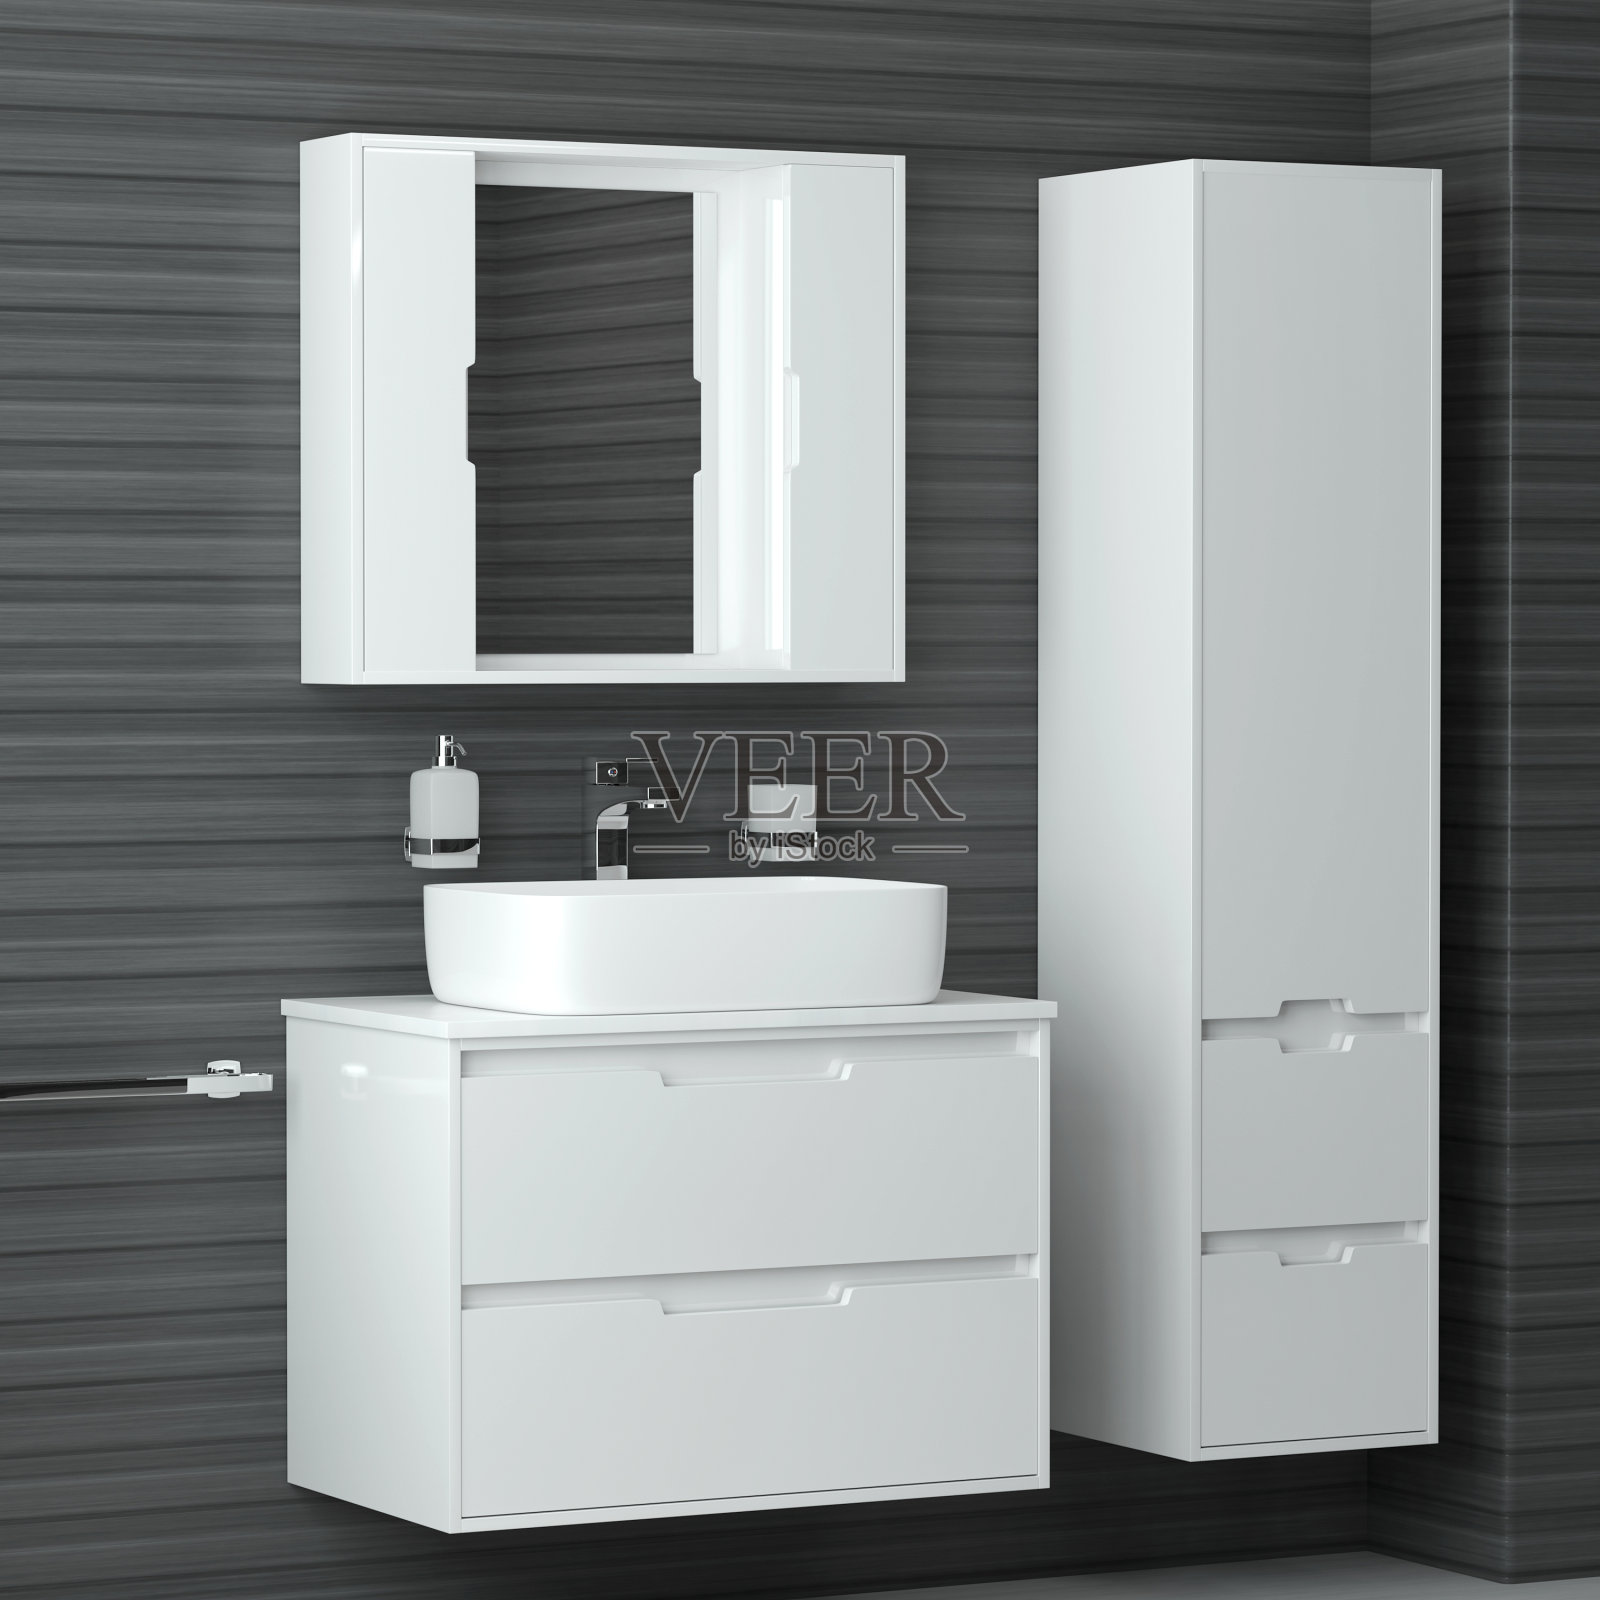 浴室内。现代白色设计的浴室与灰色的墙壁。3 d渲染图照片摄影图片